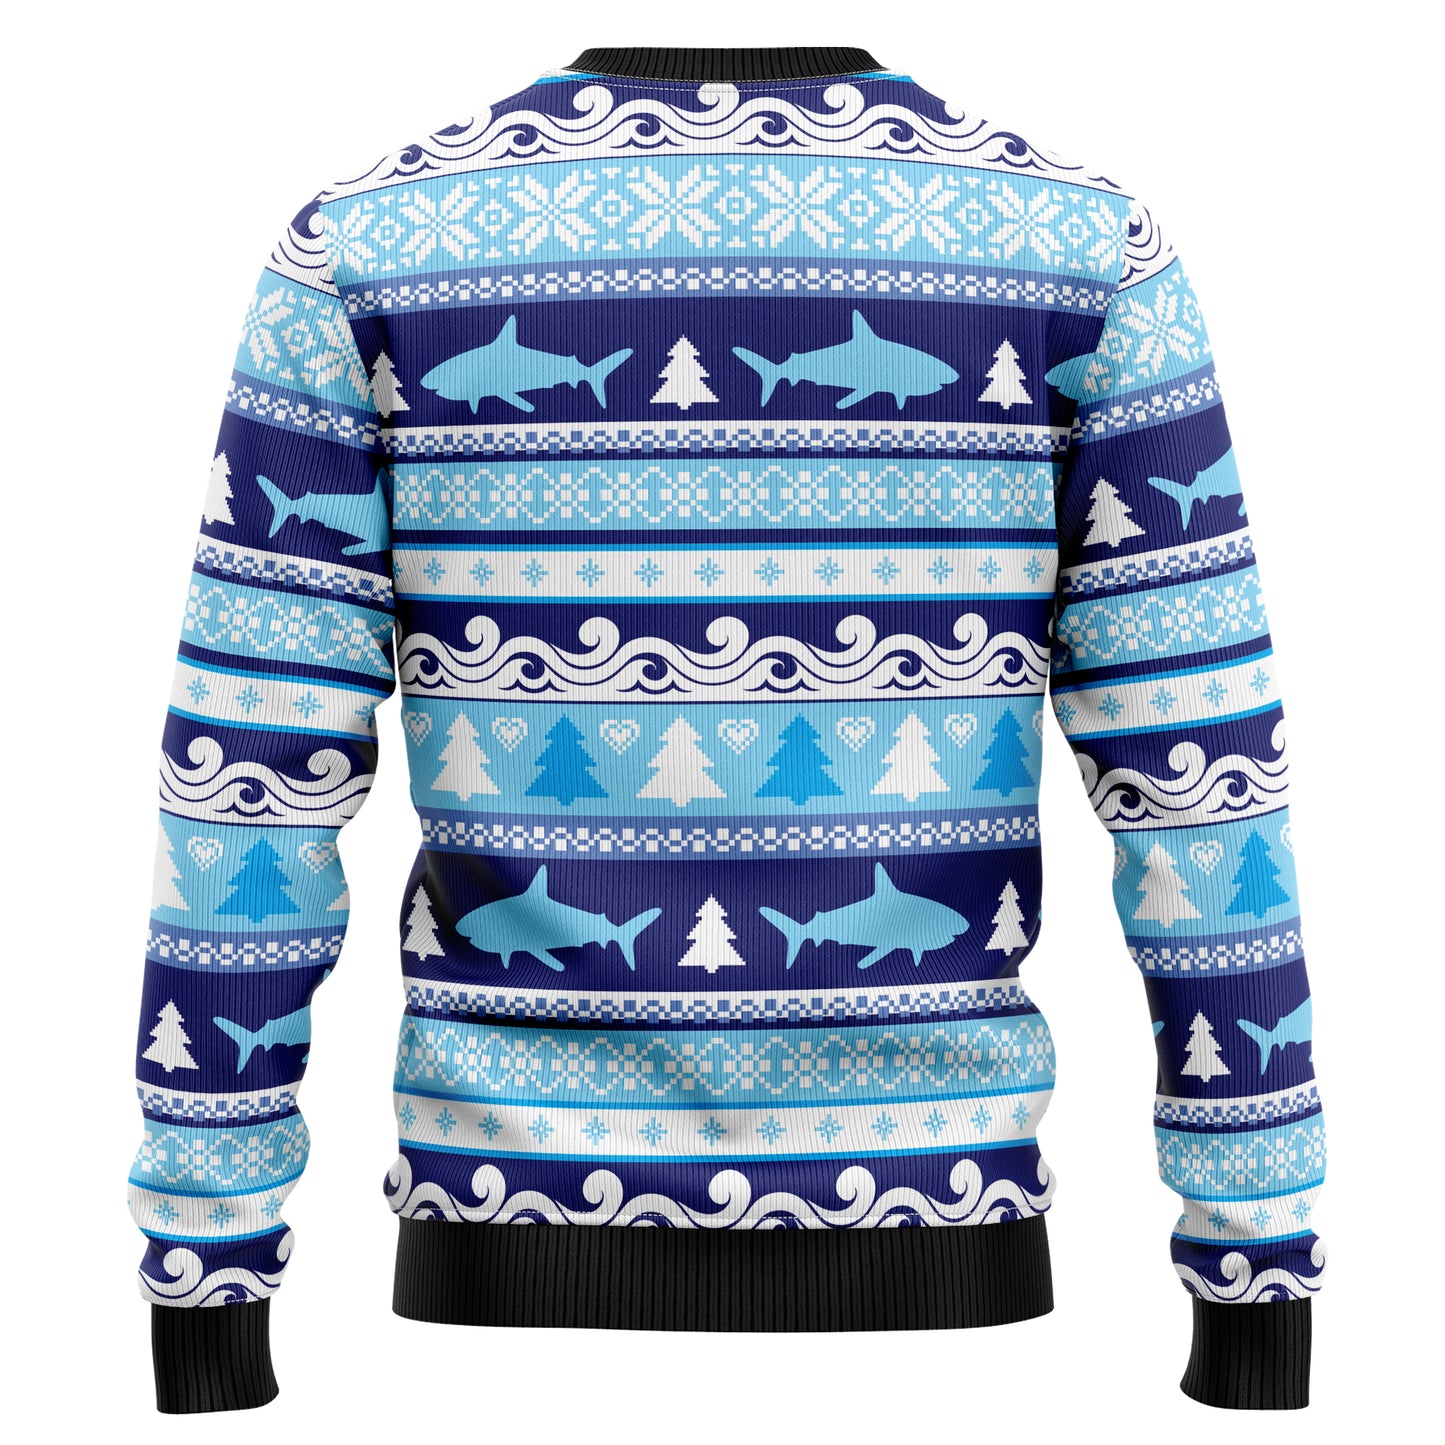 Shark Christmas Tree T2710 Ugly Christmas Sweater